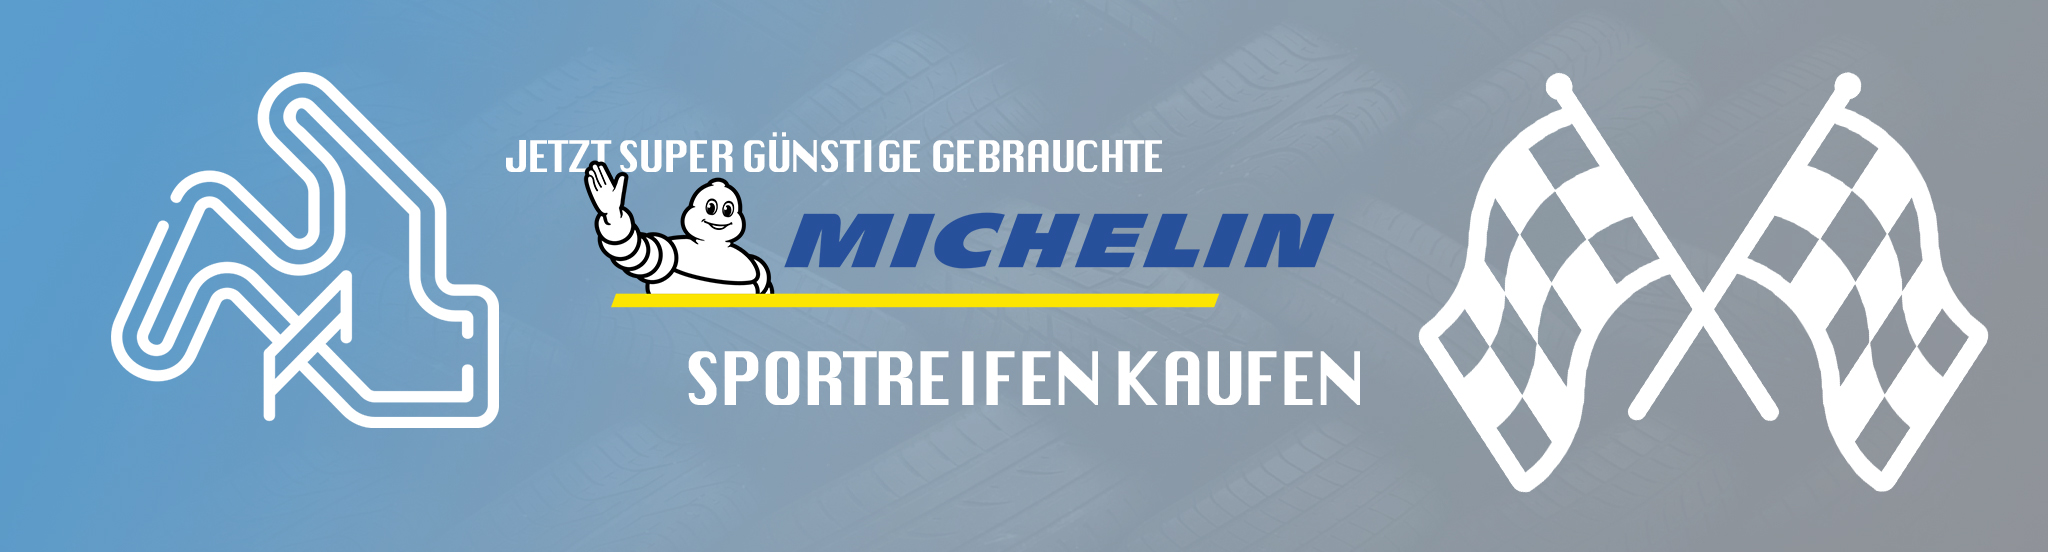 Jetzt super günstige Michelin Sportreifen kaufen!